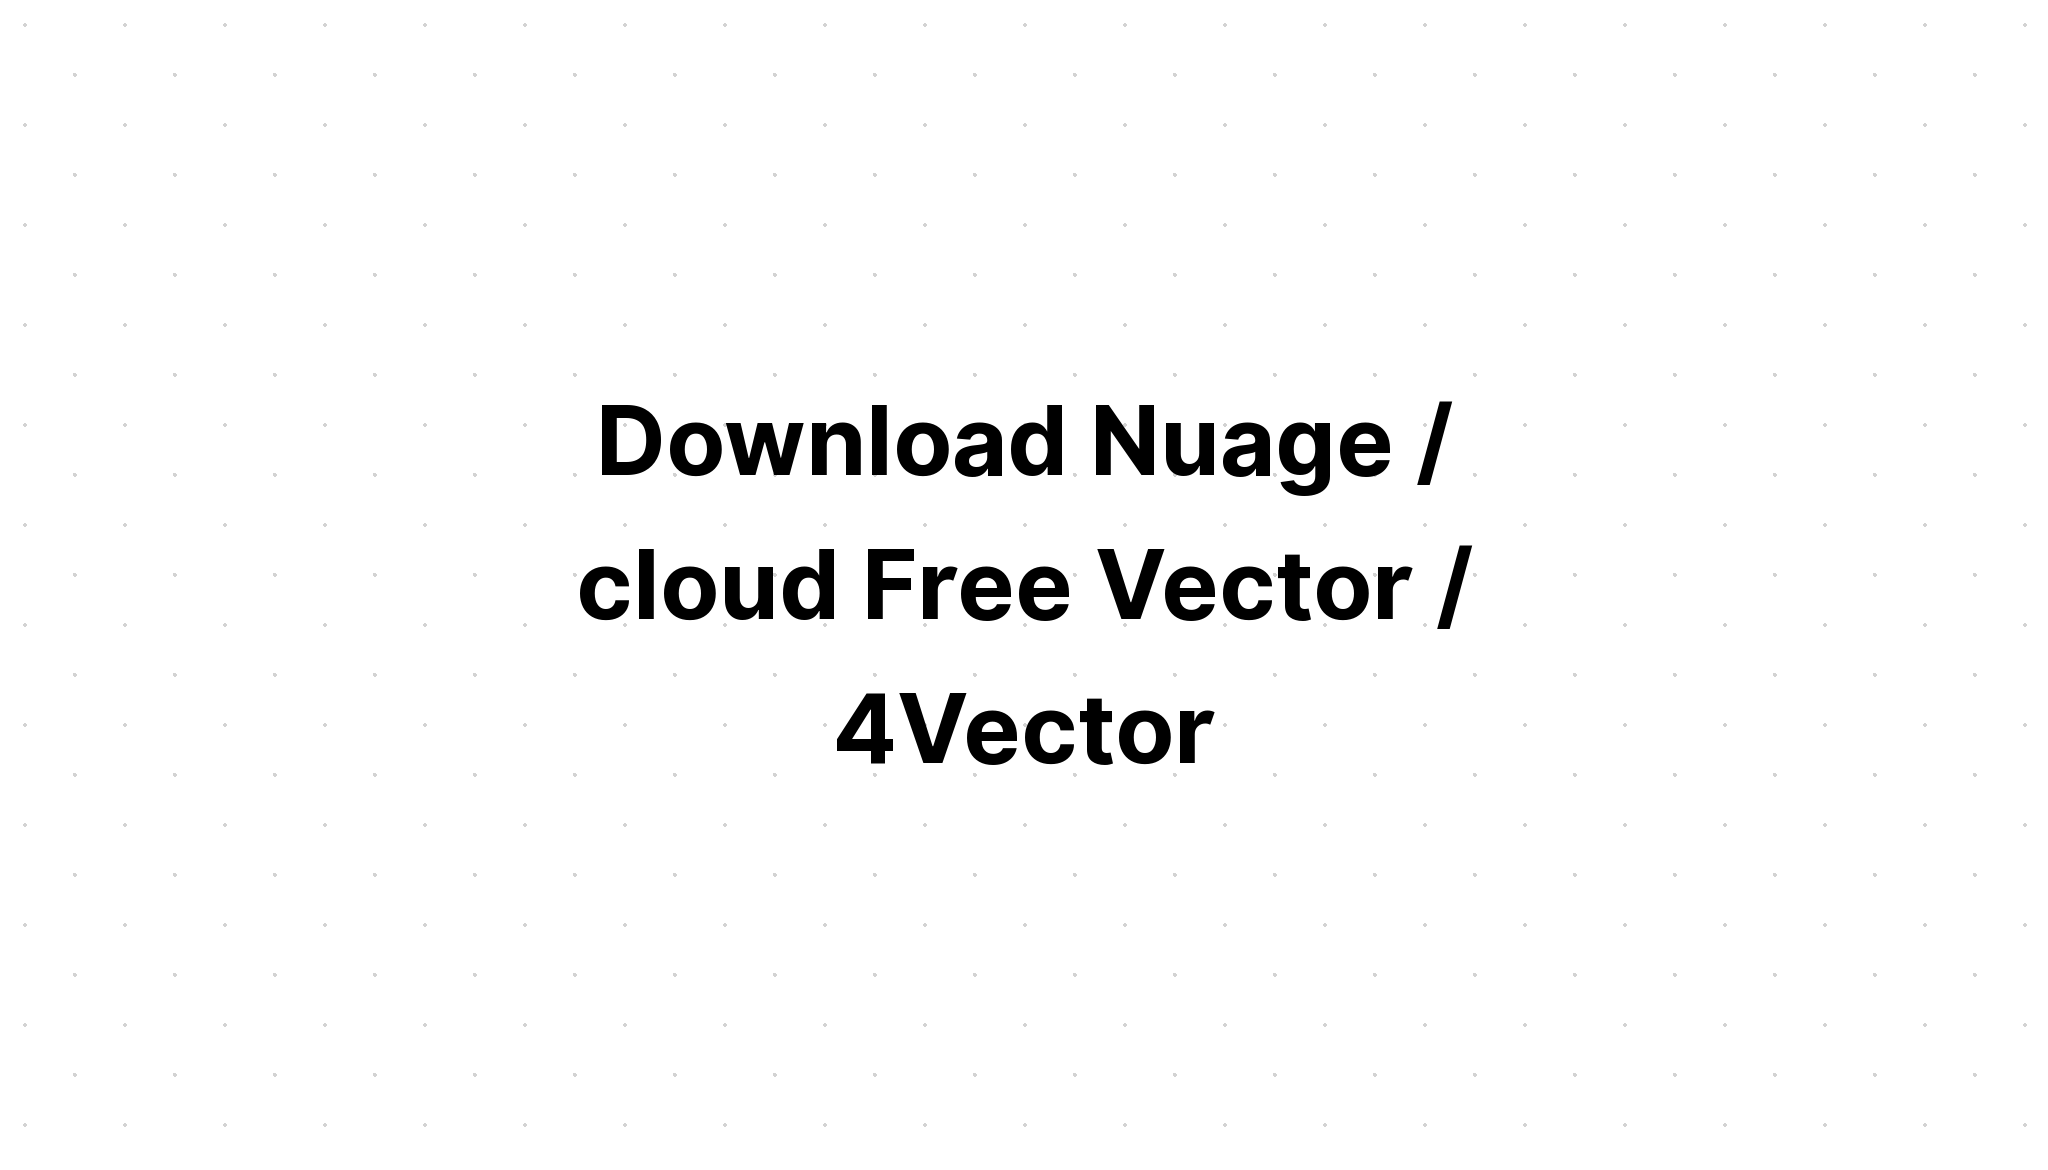 Download Cloud Vector Design Bundle SVG File